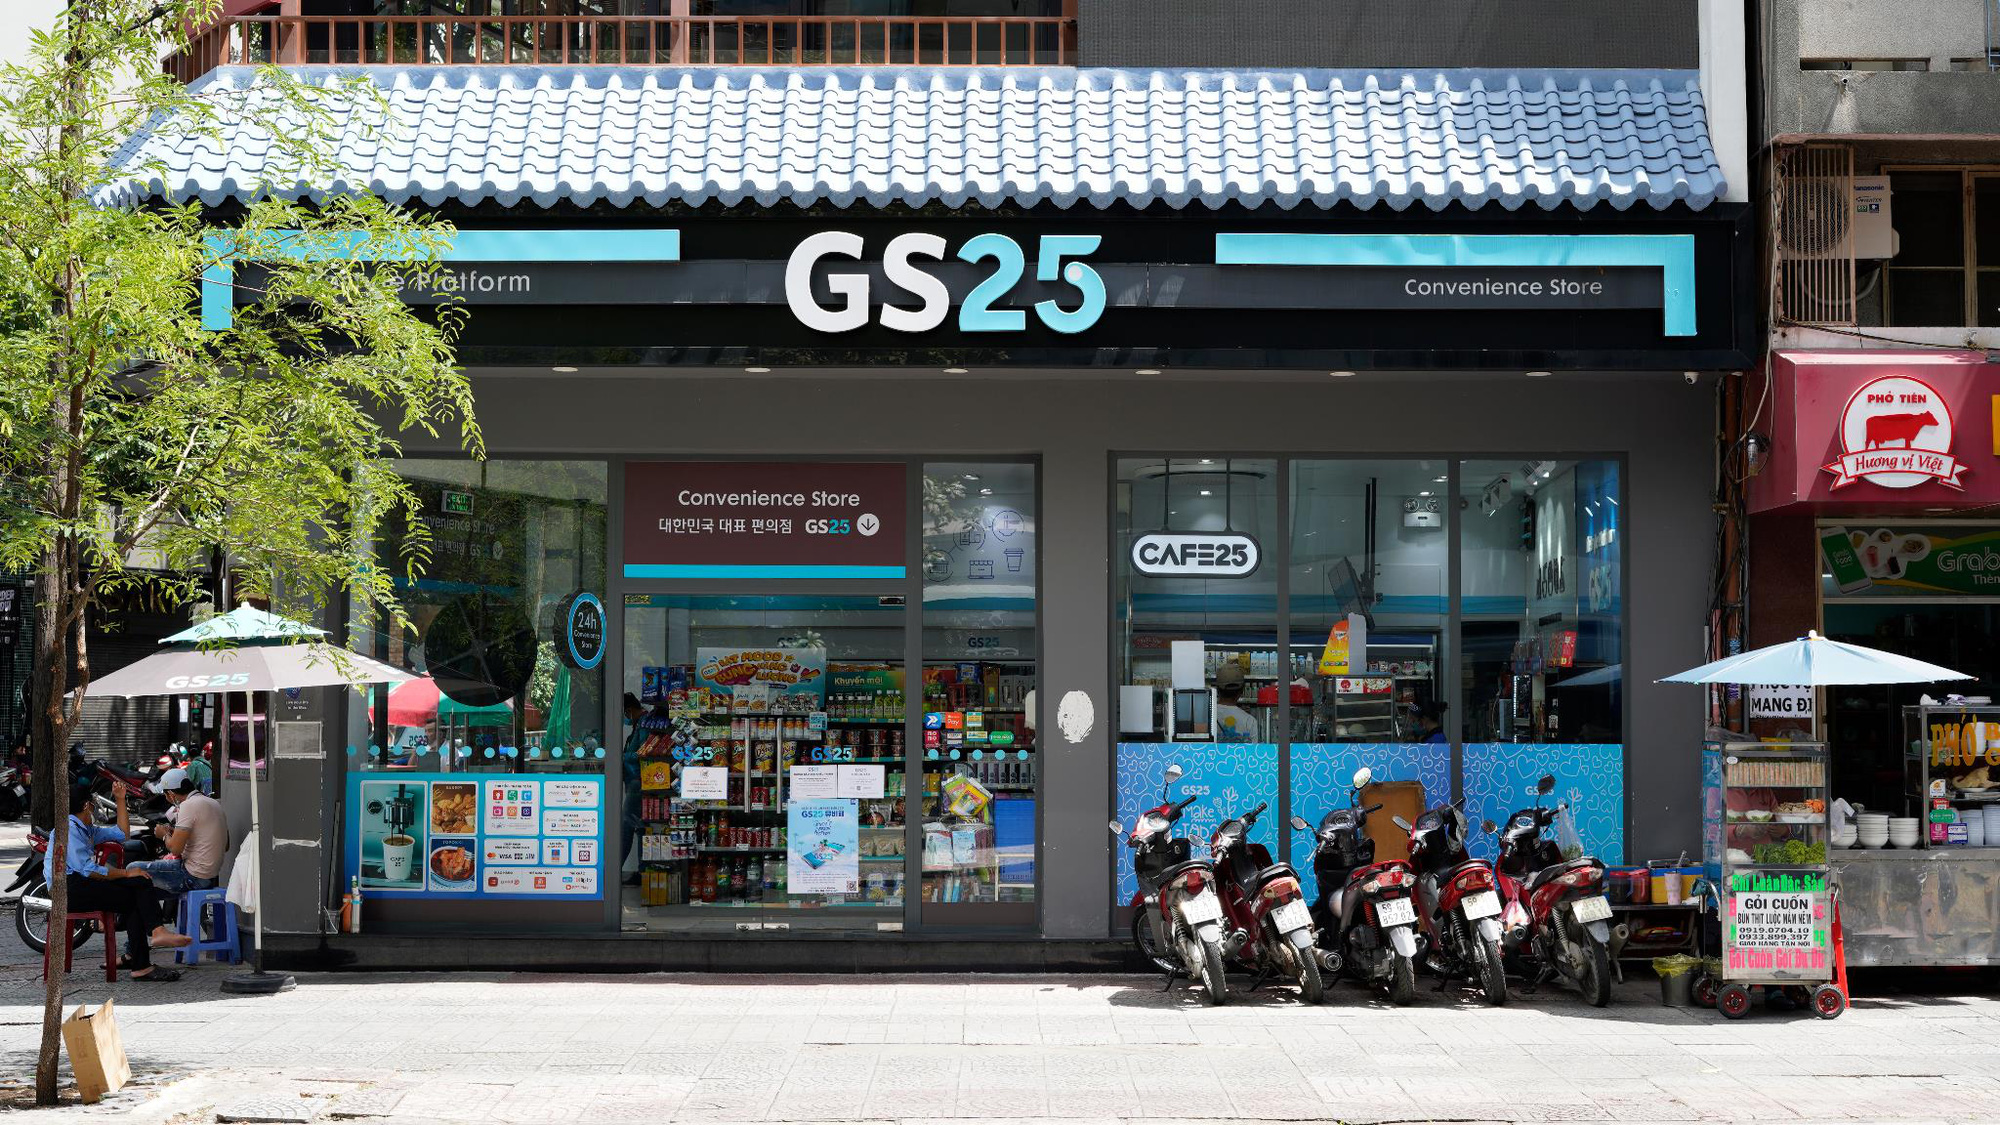 Gs25 - Trang Chủ Gs 25 Việt Nam - Chuỗi Cửa Hàng Tiện Lợi Đến Từ Hàn Quốc -  Mở Cửa 24/7 - Gs 25 Vietnam - Friendly Fresh Fun - Gs25 Convenience Store